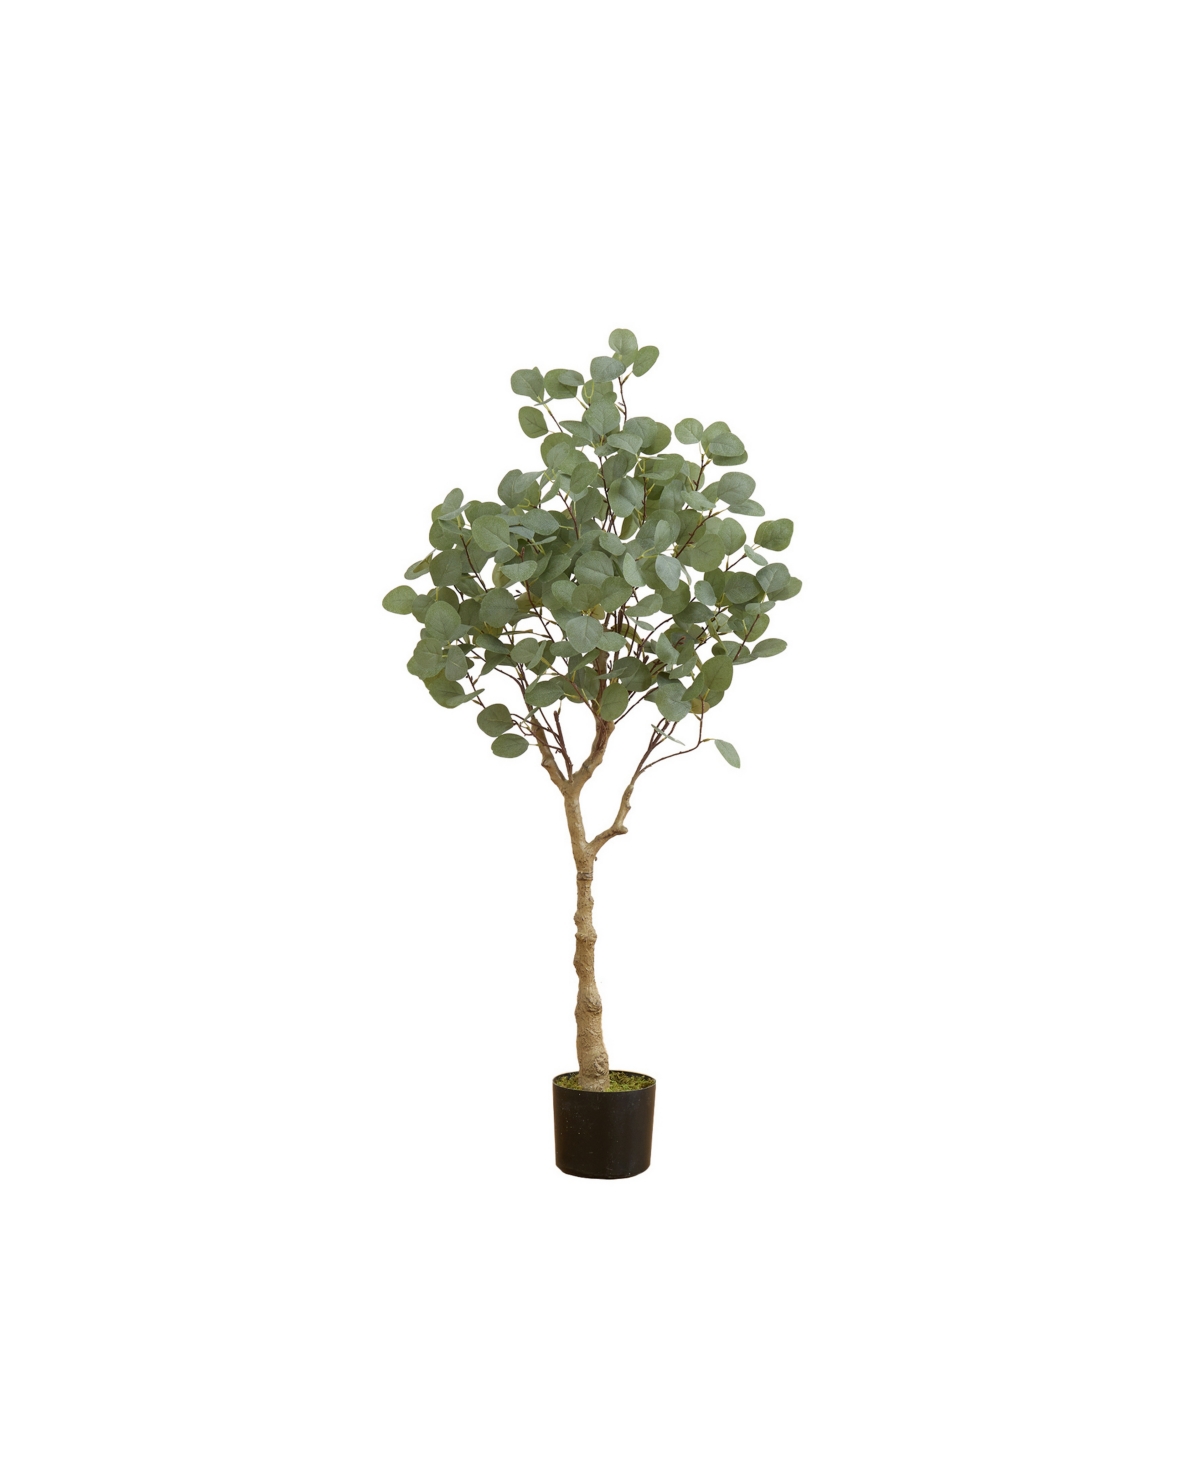 48" Artificial Eucalyptus Tree - Green